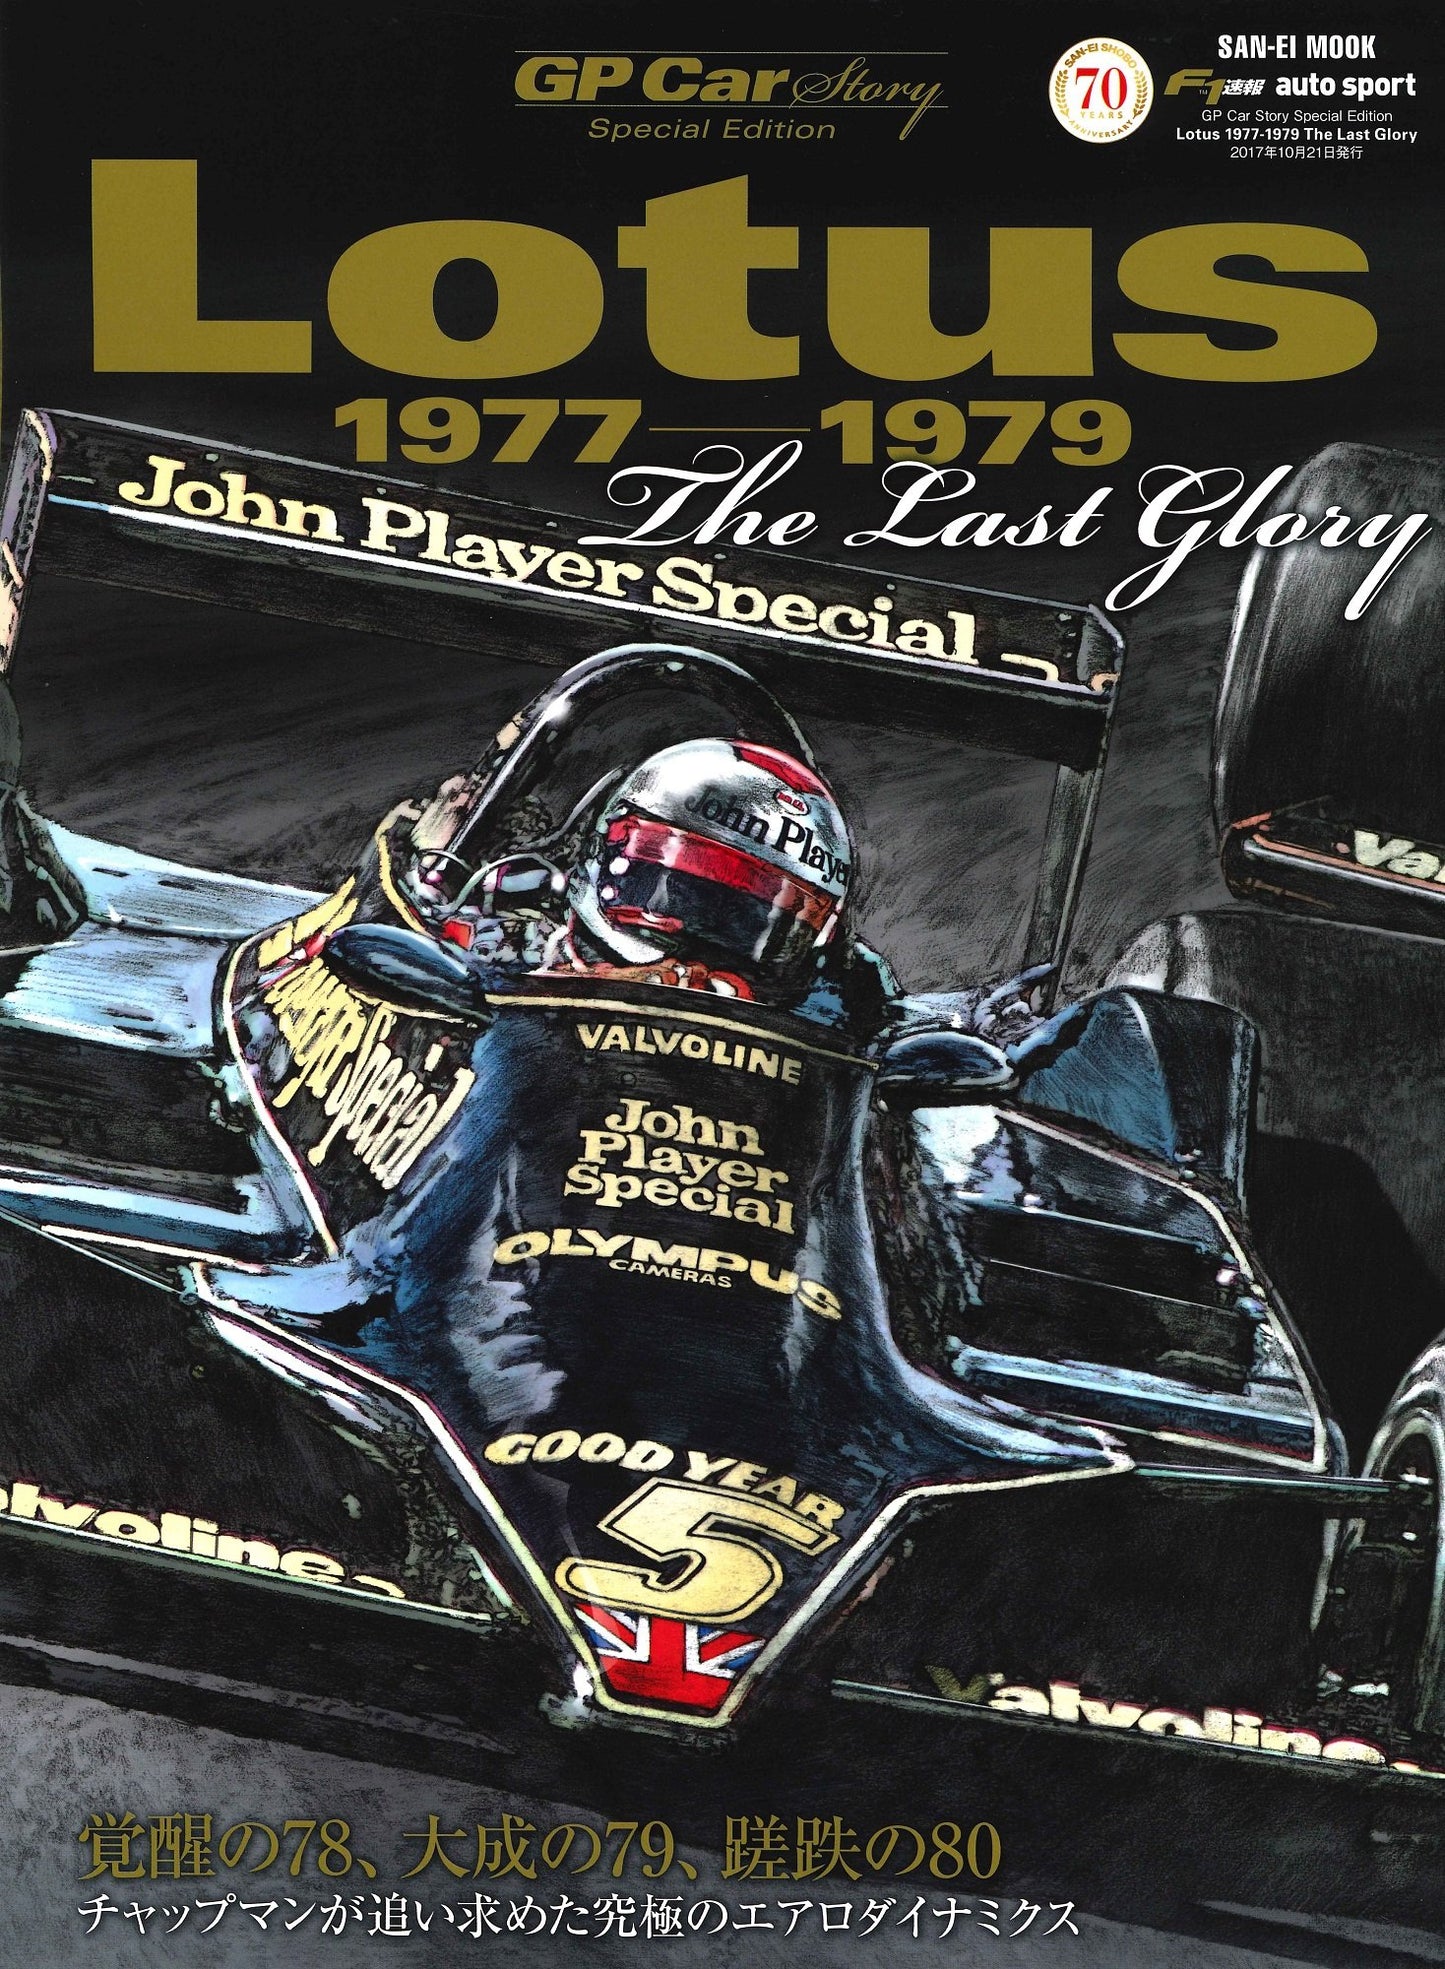 GP CAR STORY Spesial Edition Lotus 1977-1979